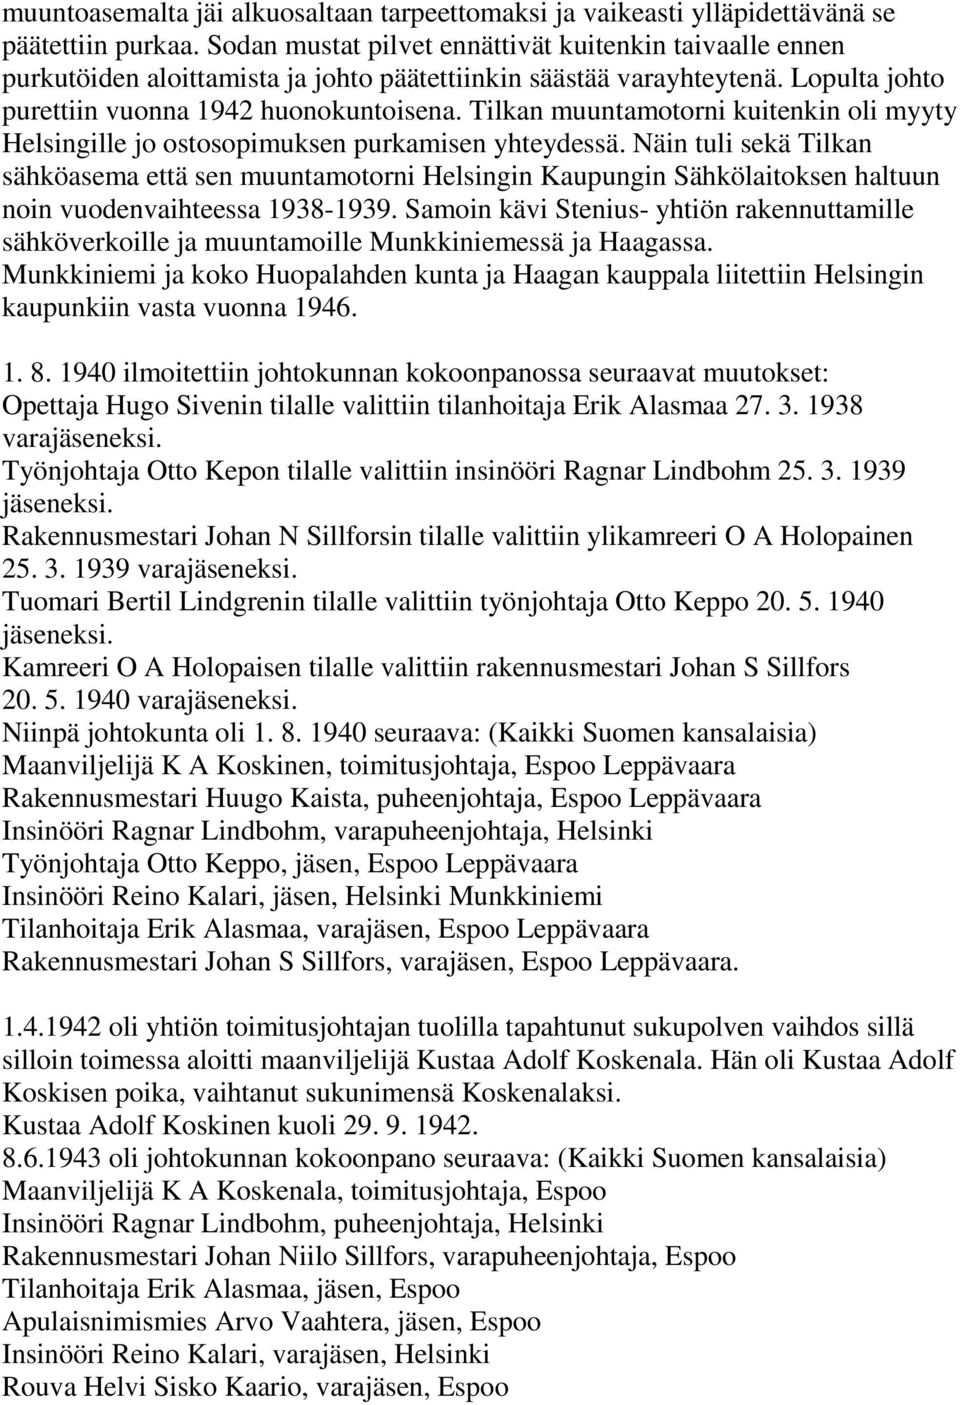 Tilkan muuntamotorni kuitenkin oli myyty Helsingille jo ostosopimuksen purkamisen yhteydessä.